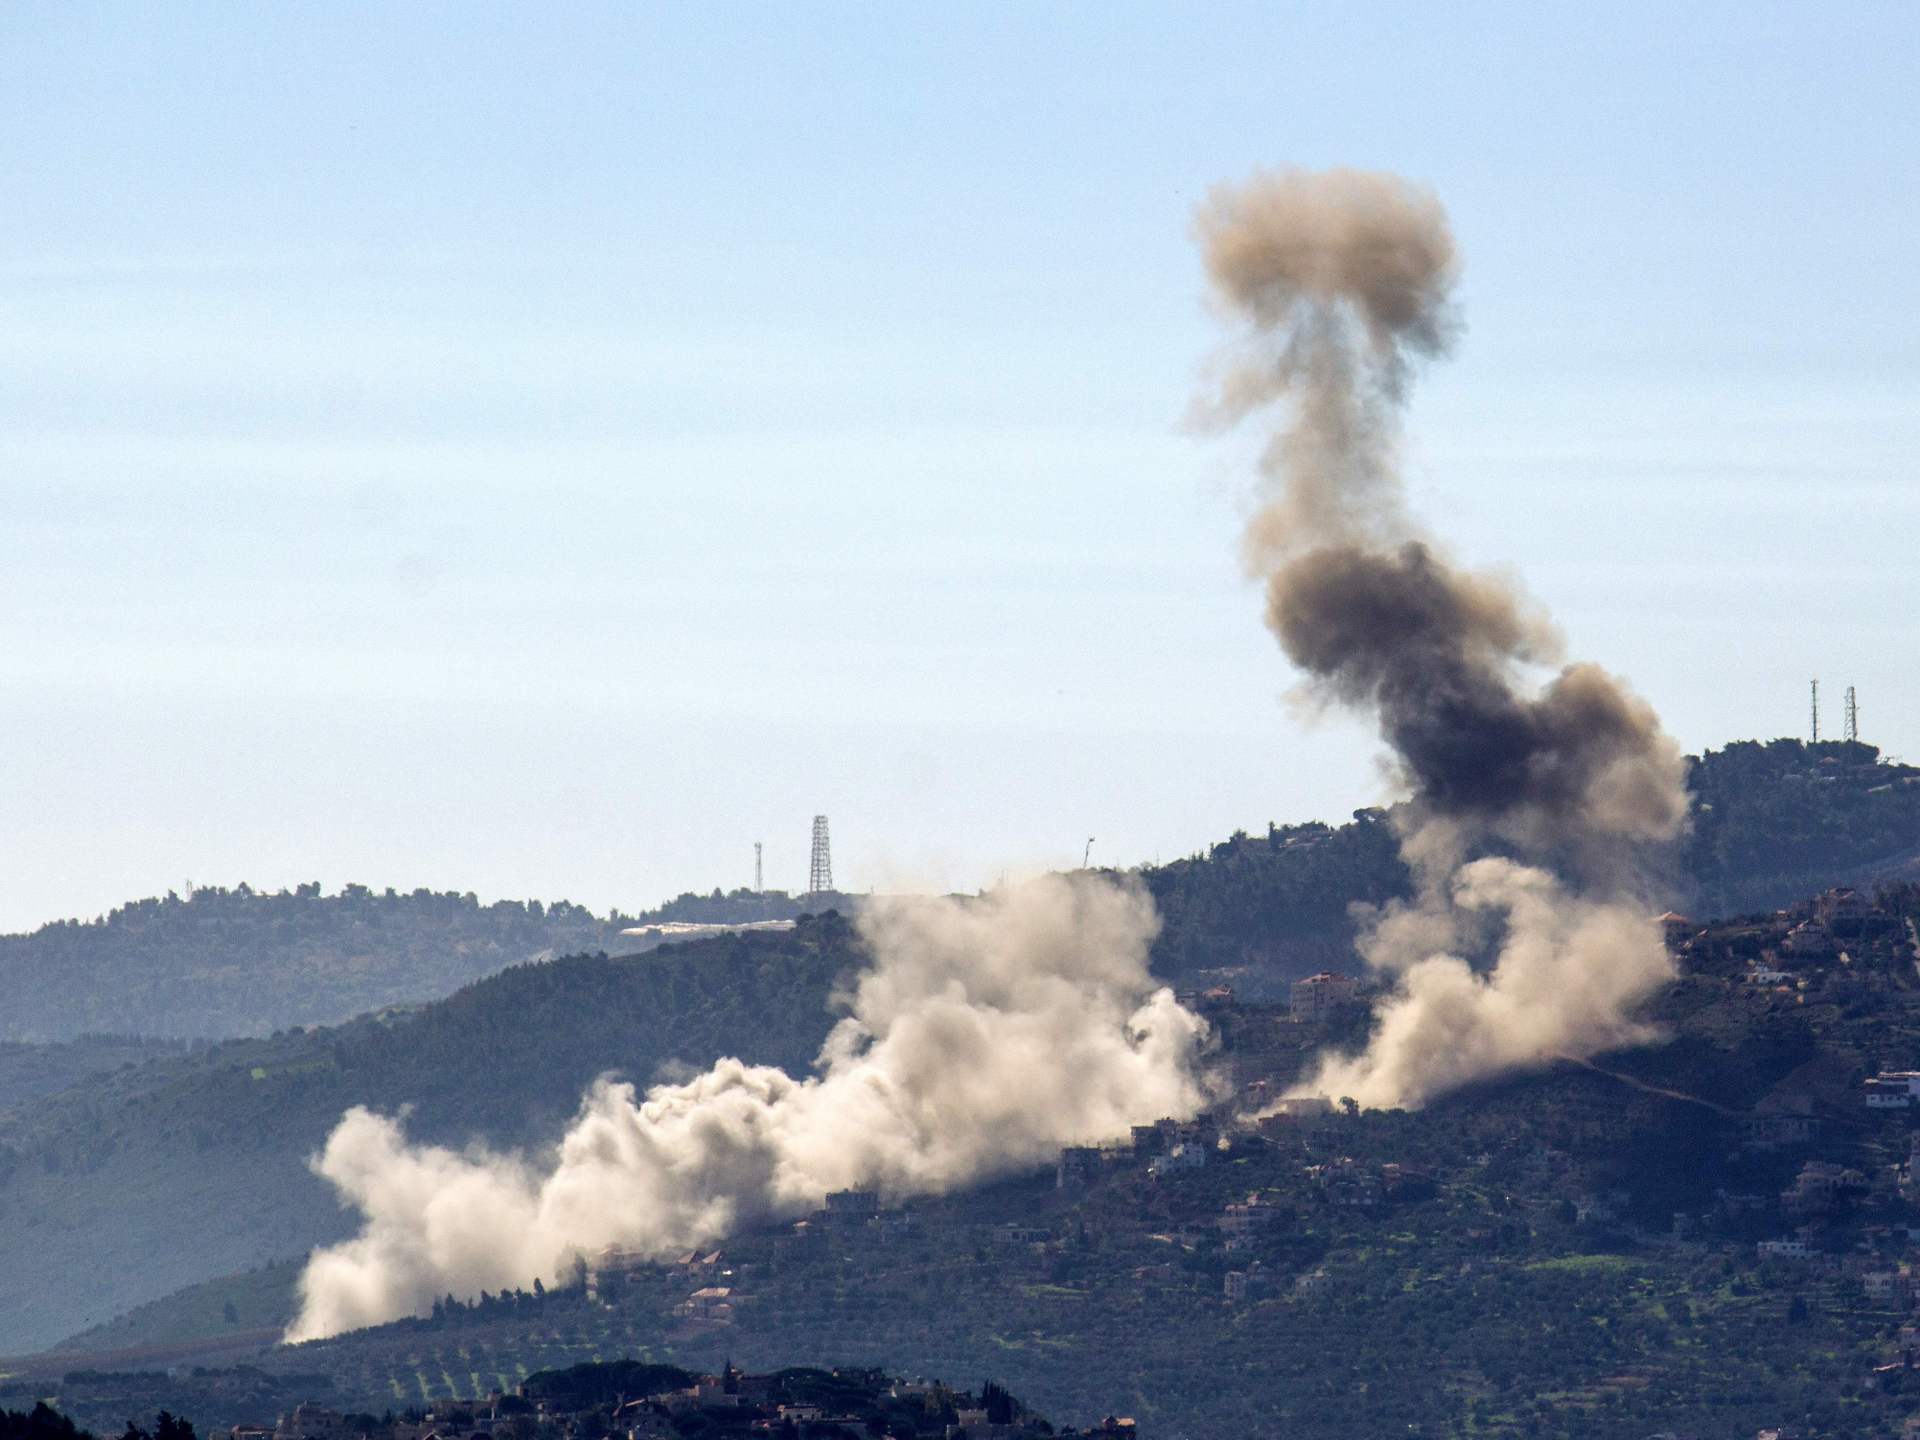 قتيلان في قصف إسرائيلي بجنوب لبنان وحزب الله يستهدف تجمعات للاحتلال | أخبار – البوكس نيوز